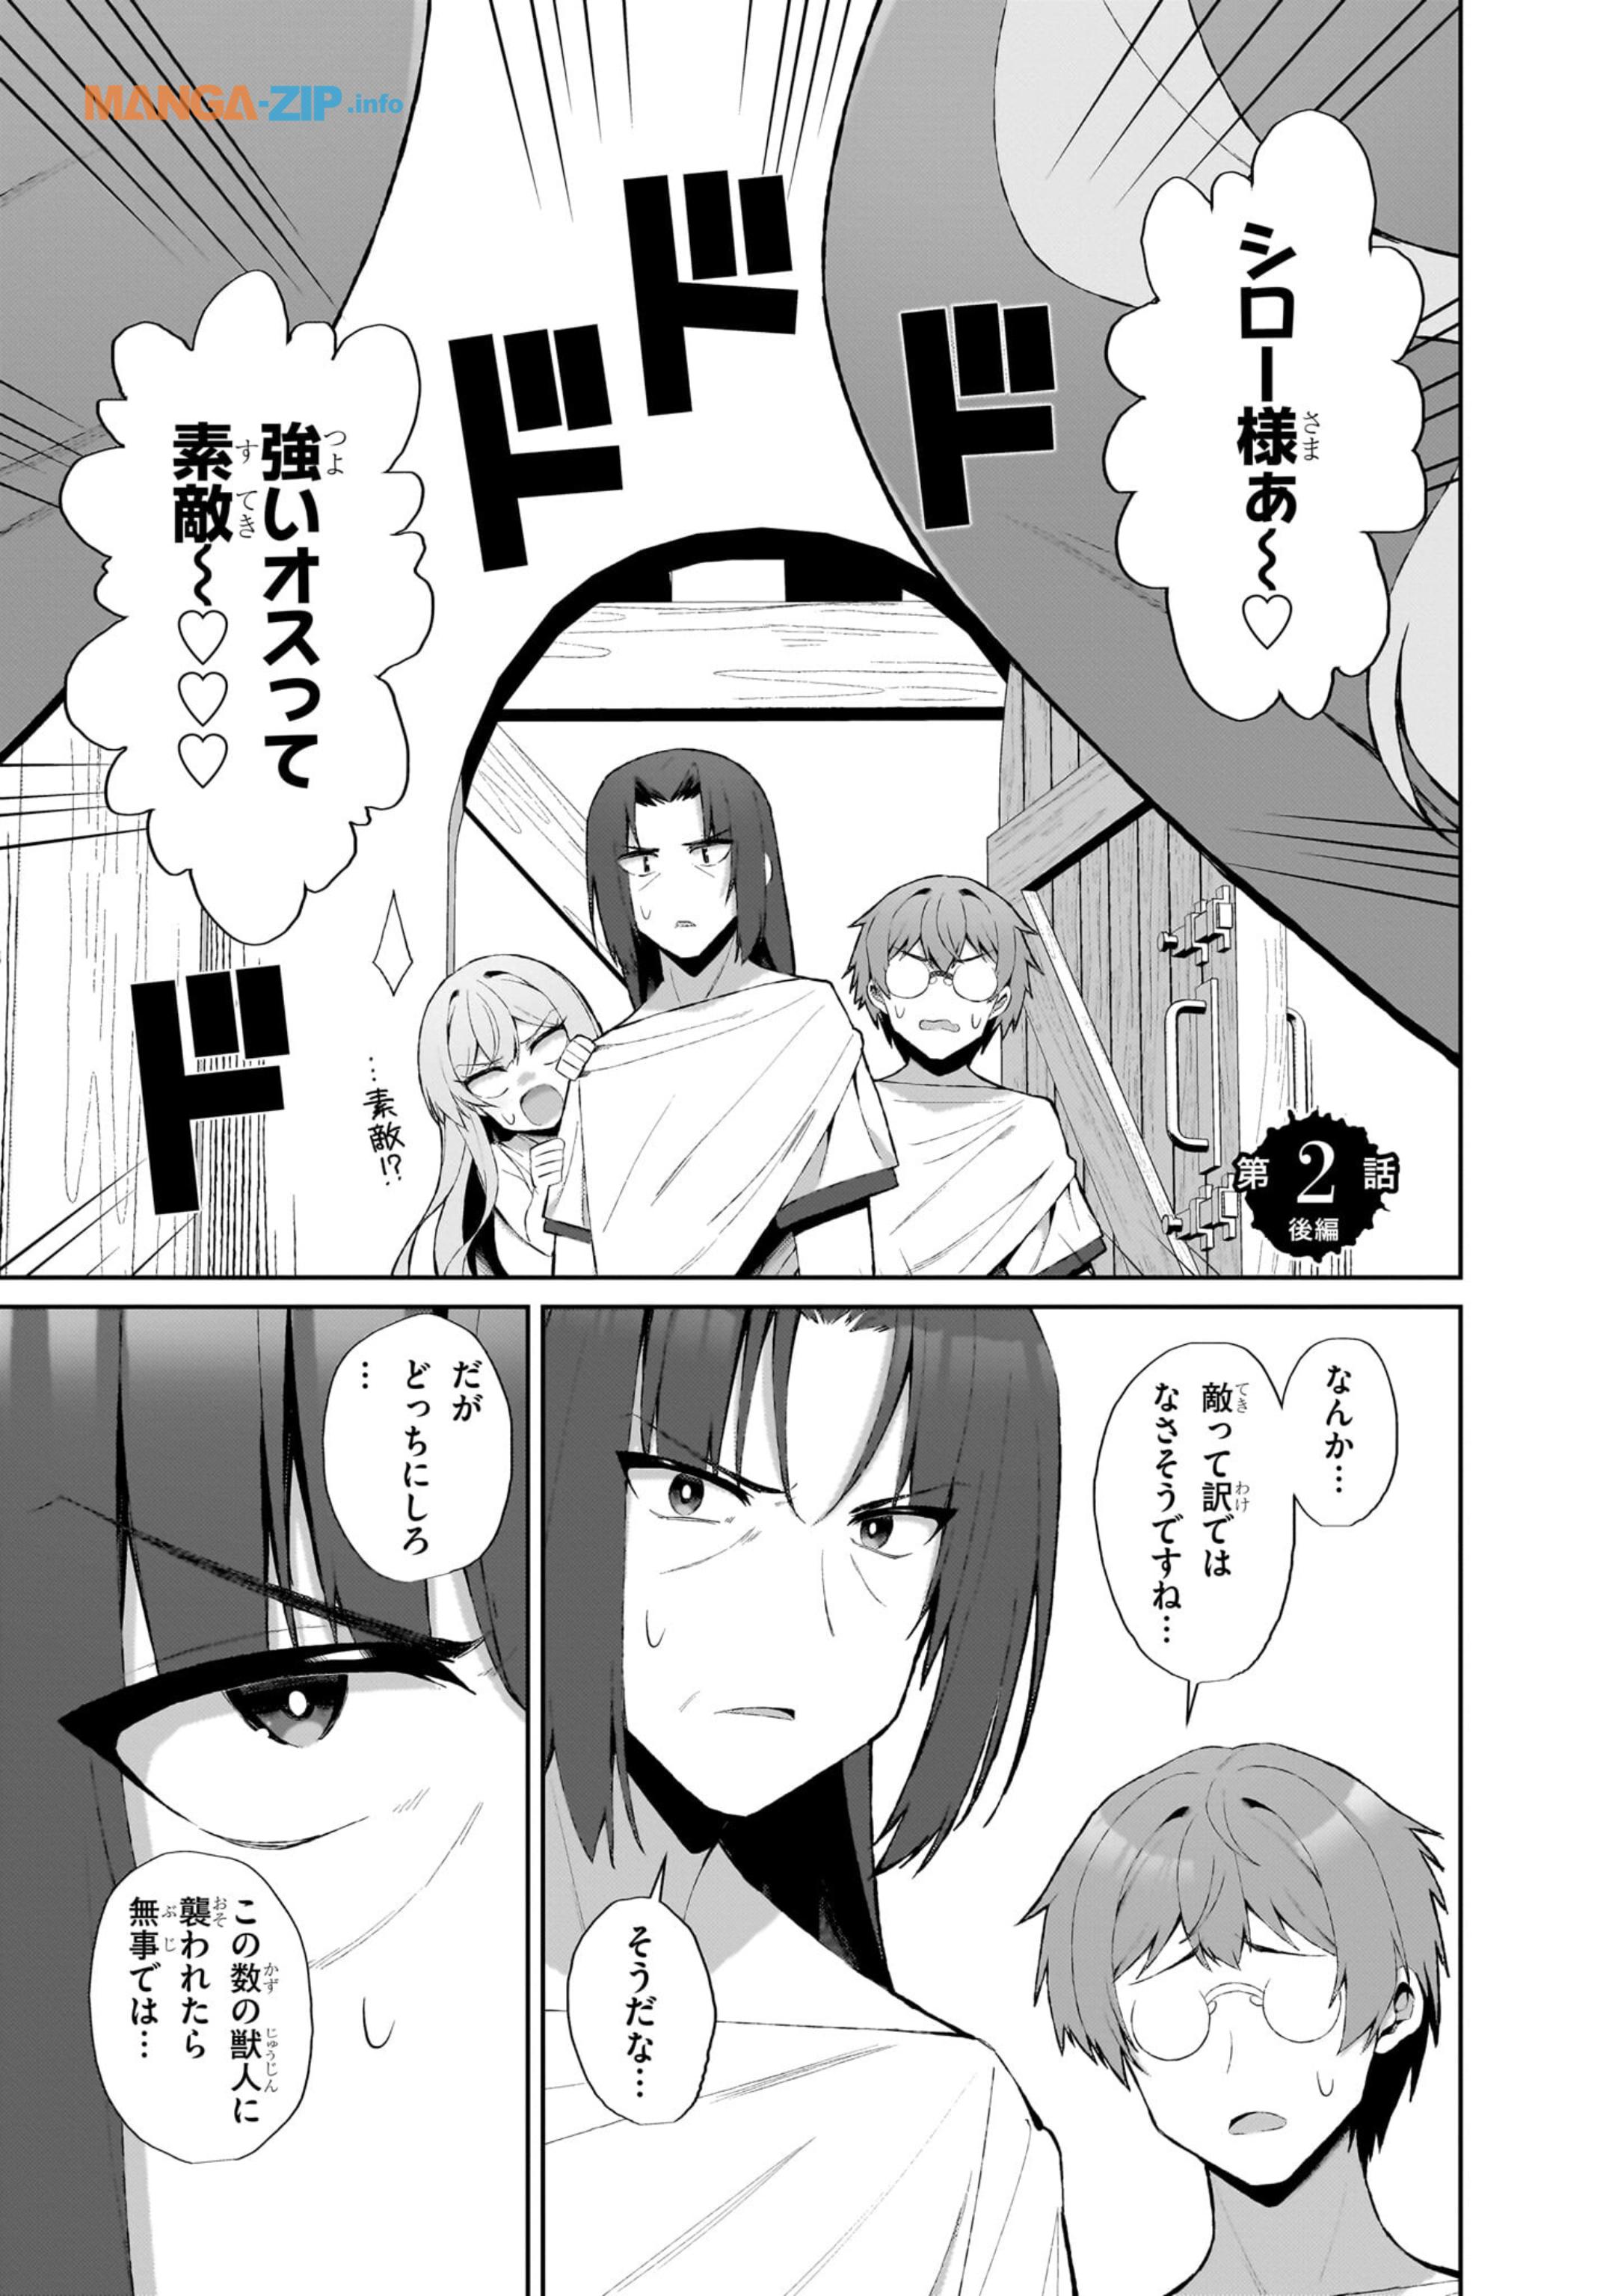 Nogaku Hakase no Isekai Muso Kinki no Chishiki de Kizuku Monster Musume Harem - Chapter 2.2 - Page 1